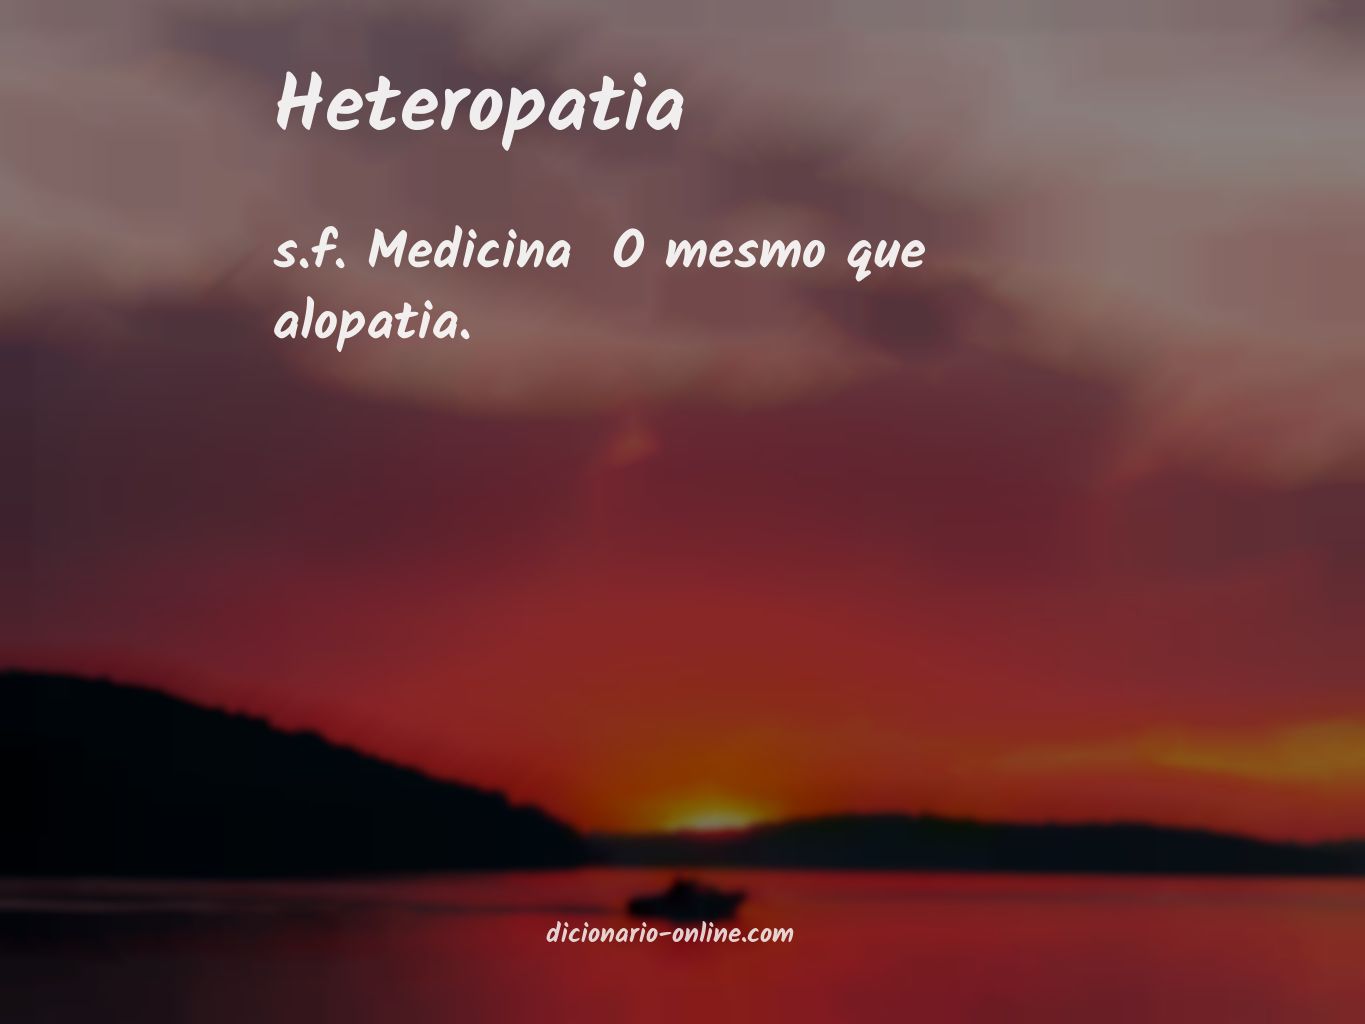 Significado de heteropatia